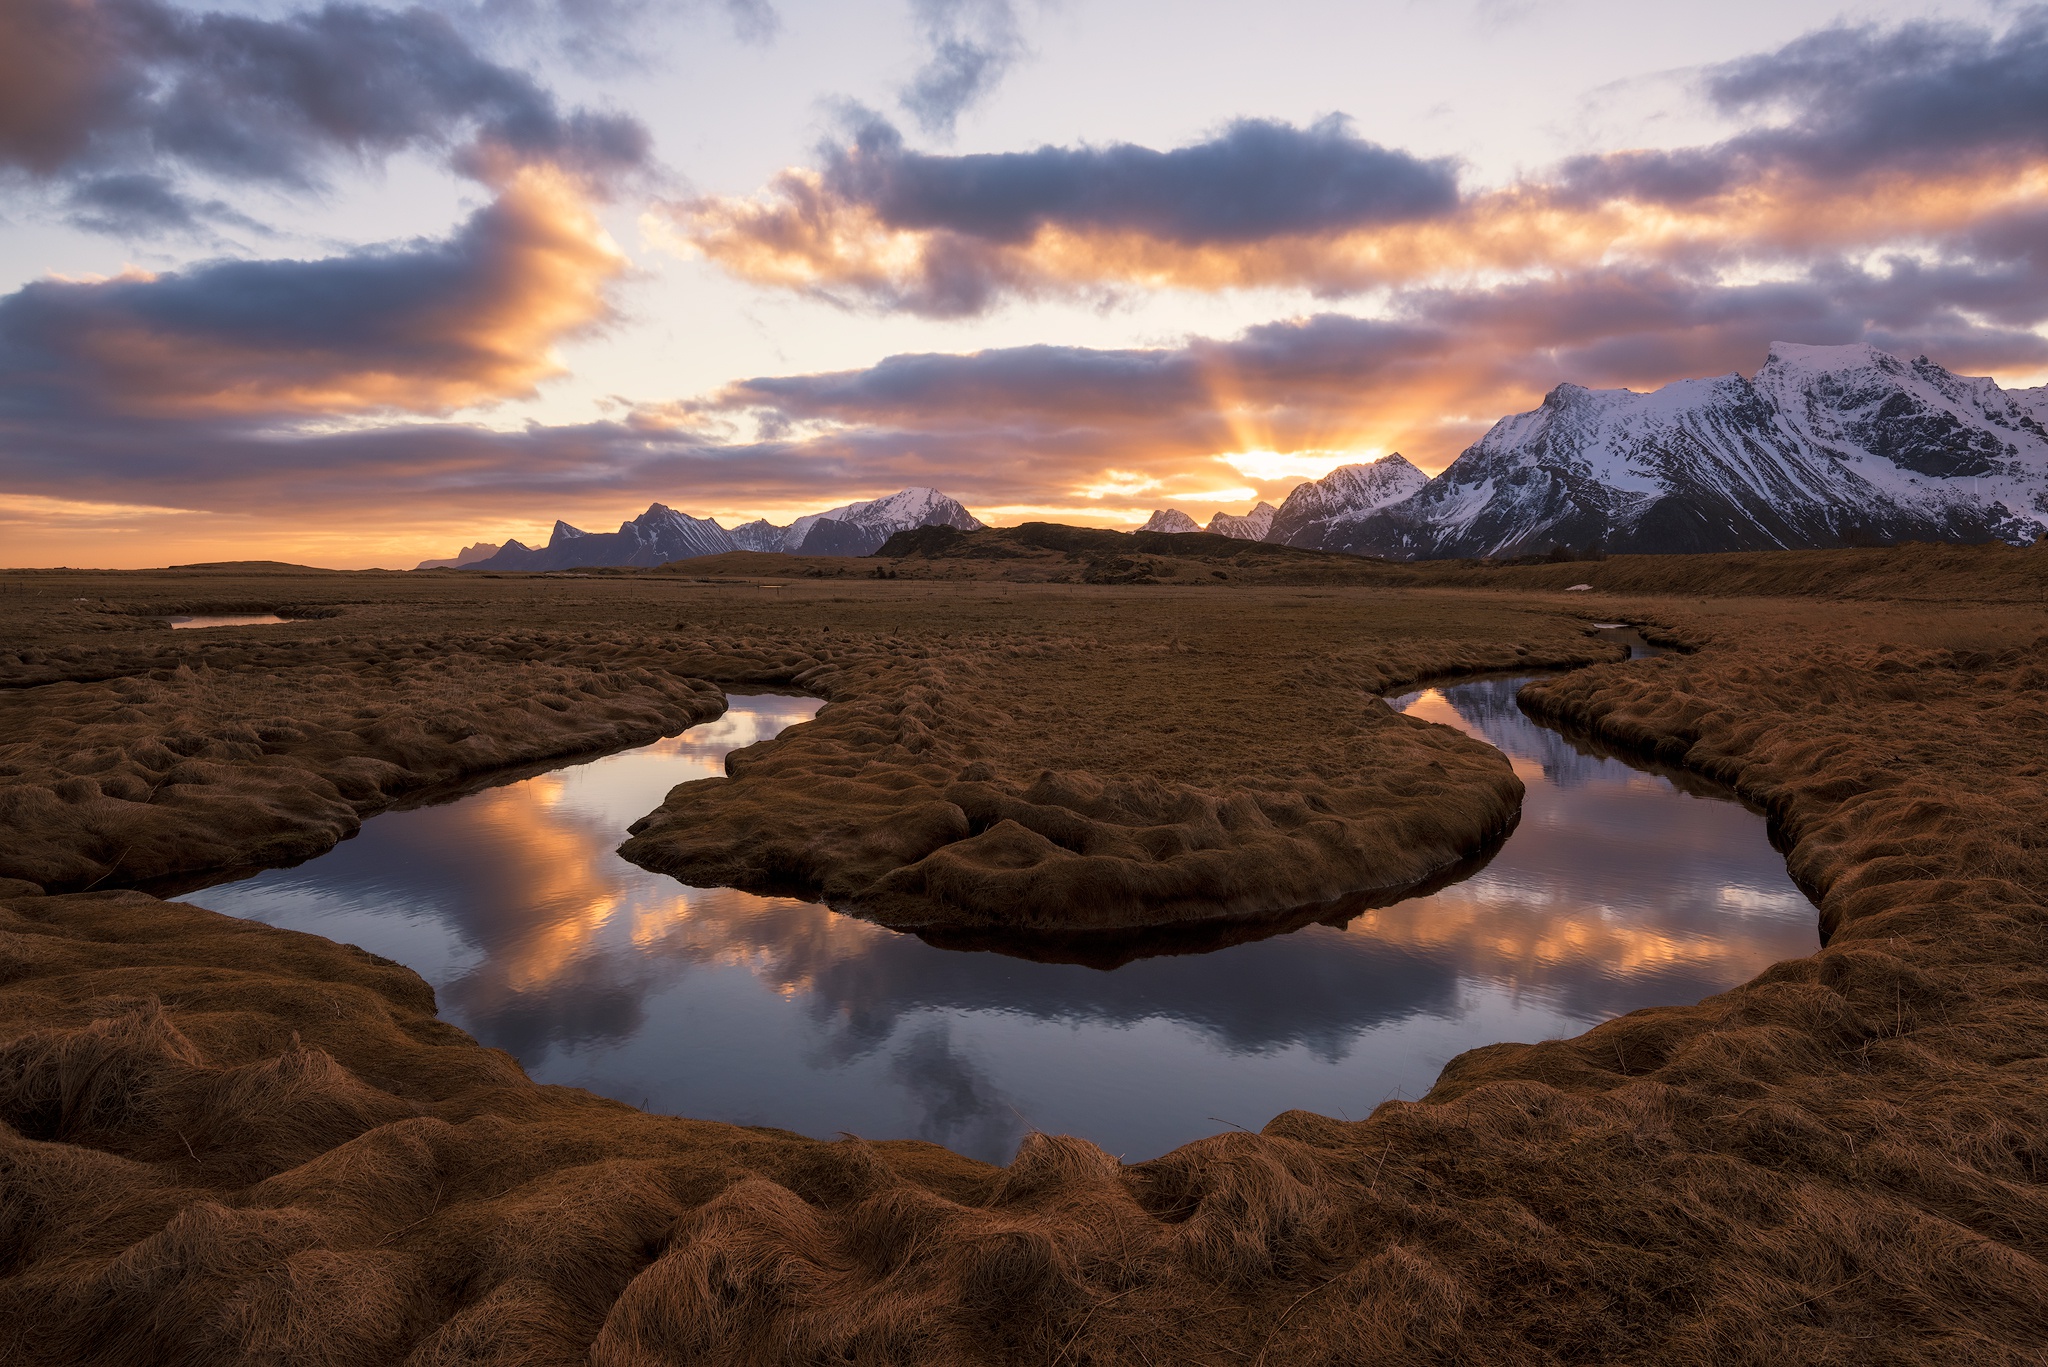 Скачать обои бесплатно Пейзаж, Река, Гора, Исландия, Земля/природа картинка на рабочий стол ПК